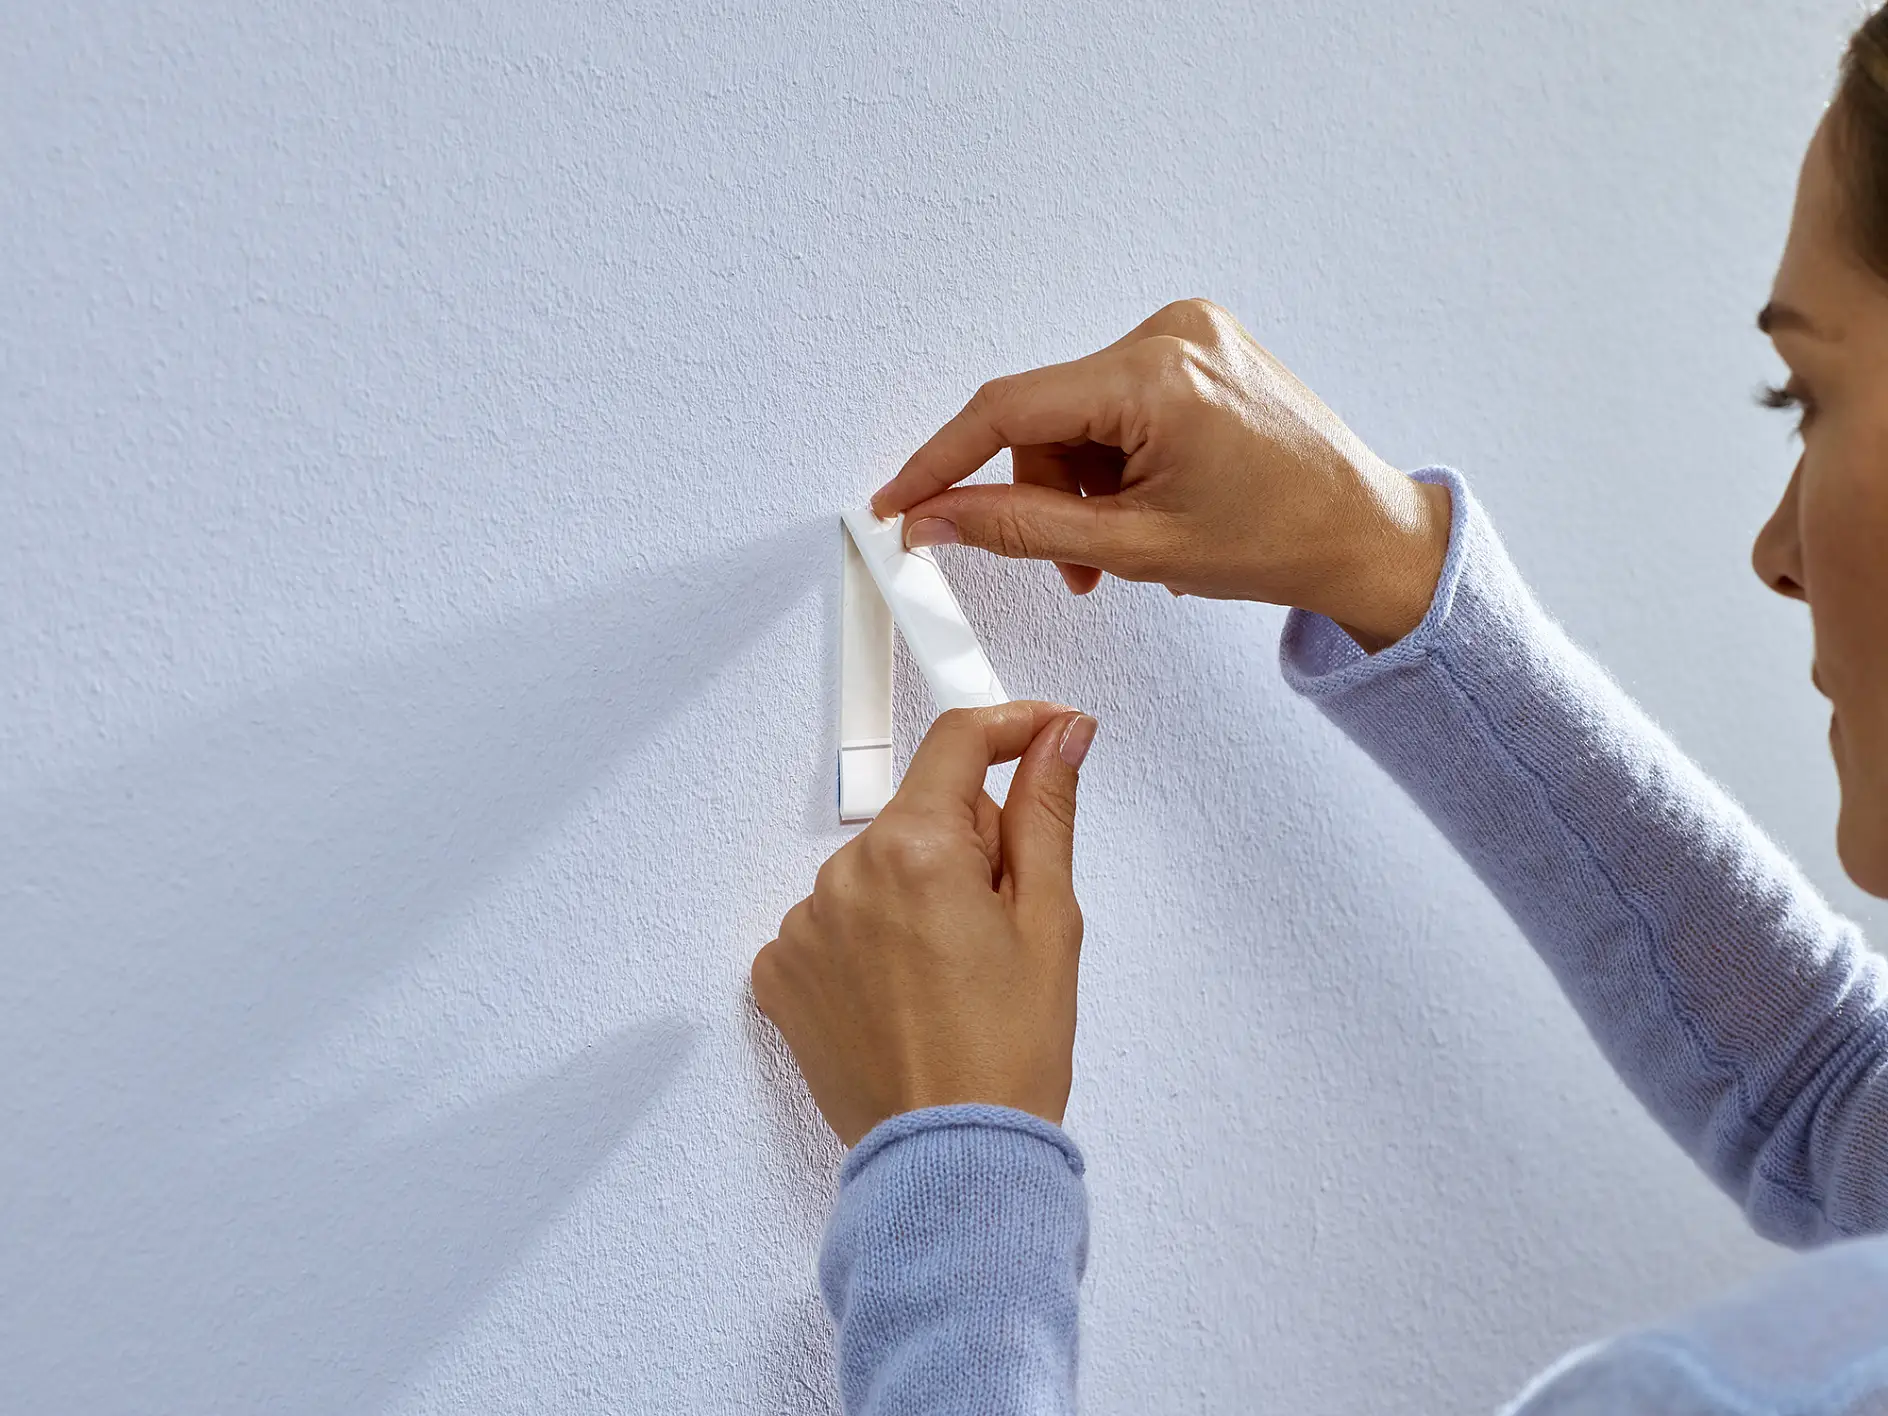 贴上tesa®墙纸与石膏用无痕挂钉（1公斤）。